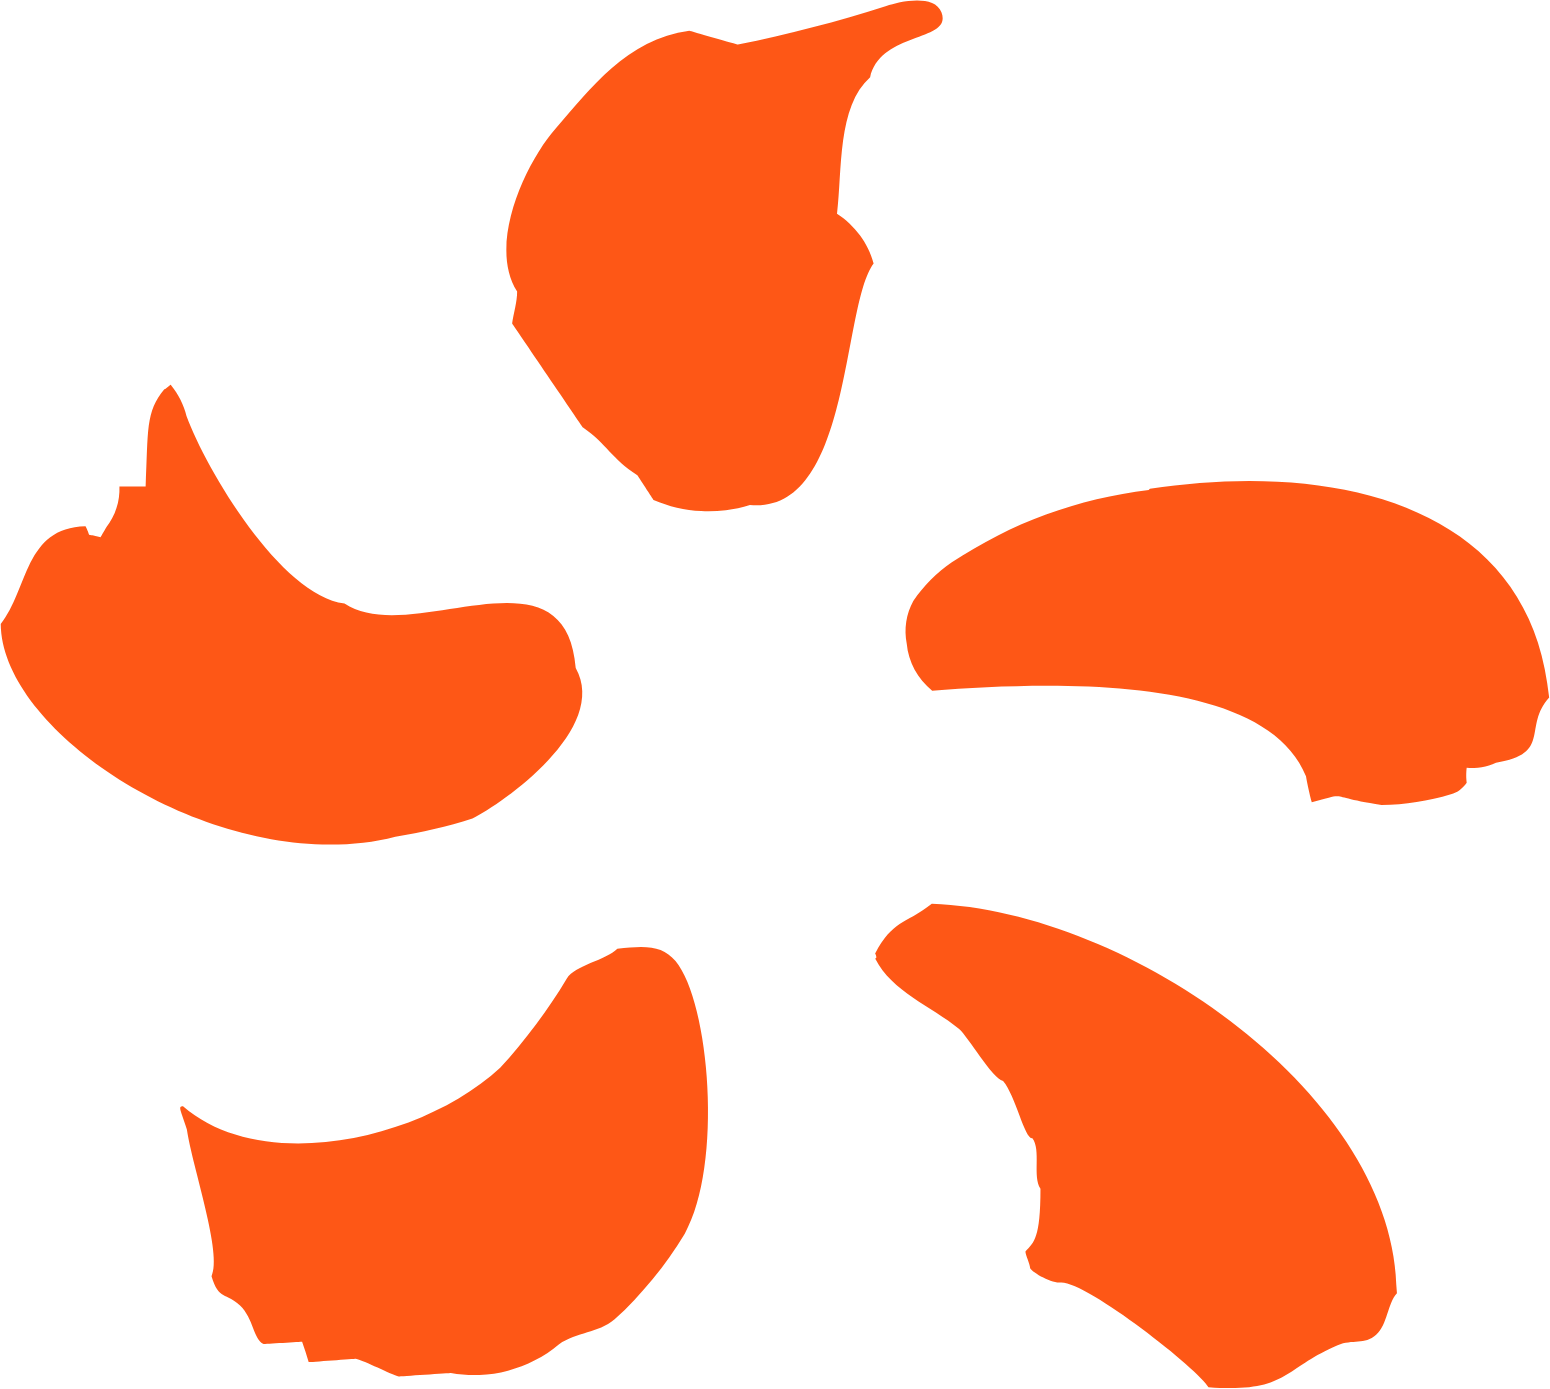 EDF (Electricité de France) logo (PNG transparent)